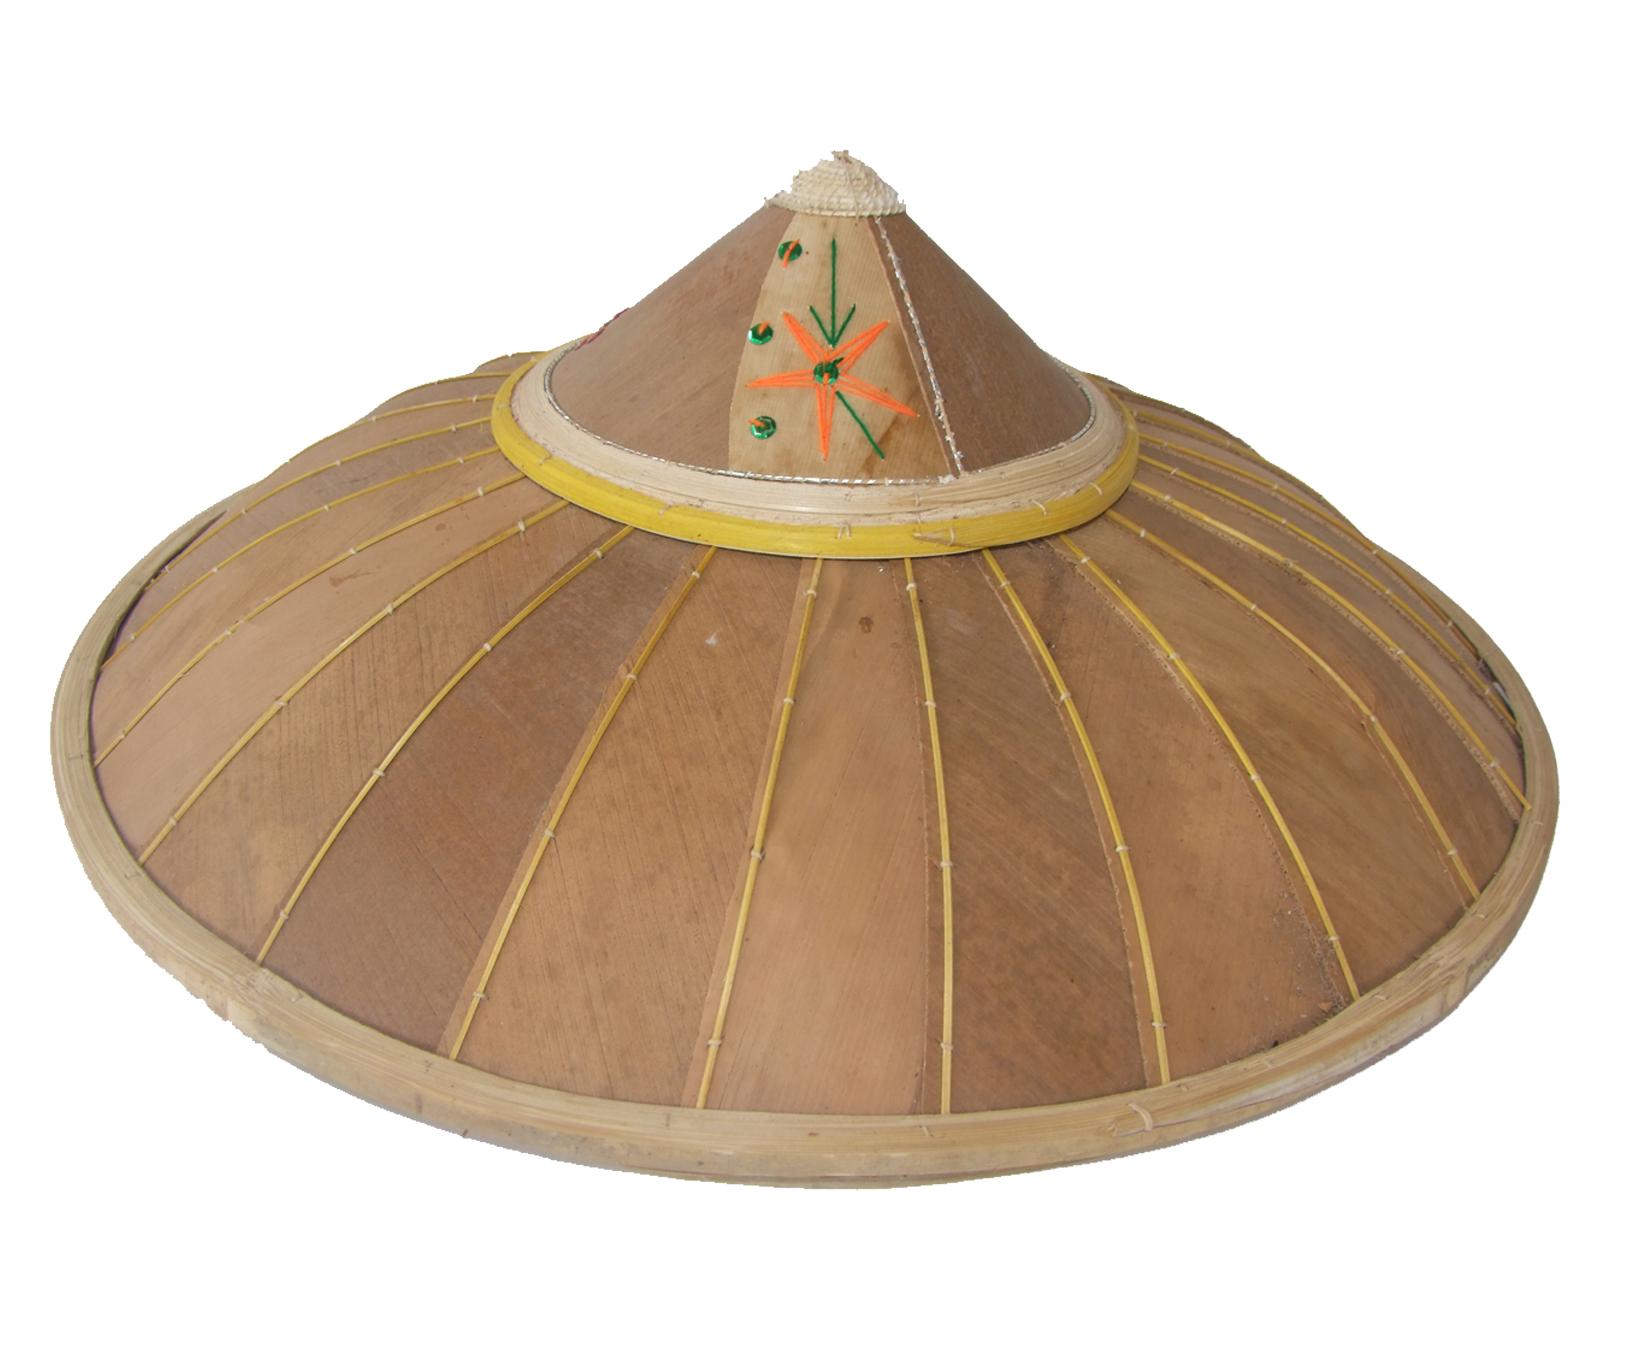 Shan hat กุ๊บไตย หมวกไทยใหญ่ หมวกกาบไม้ไผ่ซาง หมวกเวียดนาม หมวกกันแดด หมวกชนชาติไตยเต้นรำ อุปกรณ์หมวก หมวกทำจากกาบไม้ไผ่ซาง หมวกธรรมชาติ ขนาดเส้นผ่านศูนย์กลาง 45 cm.